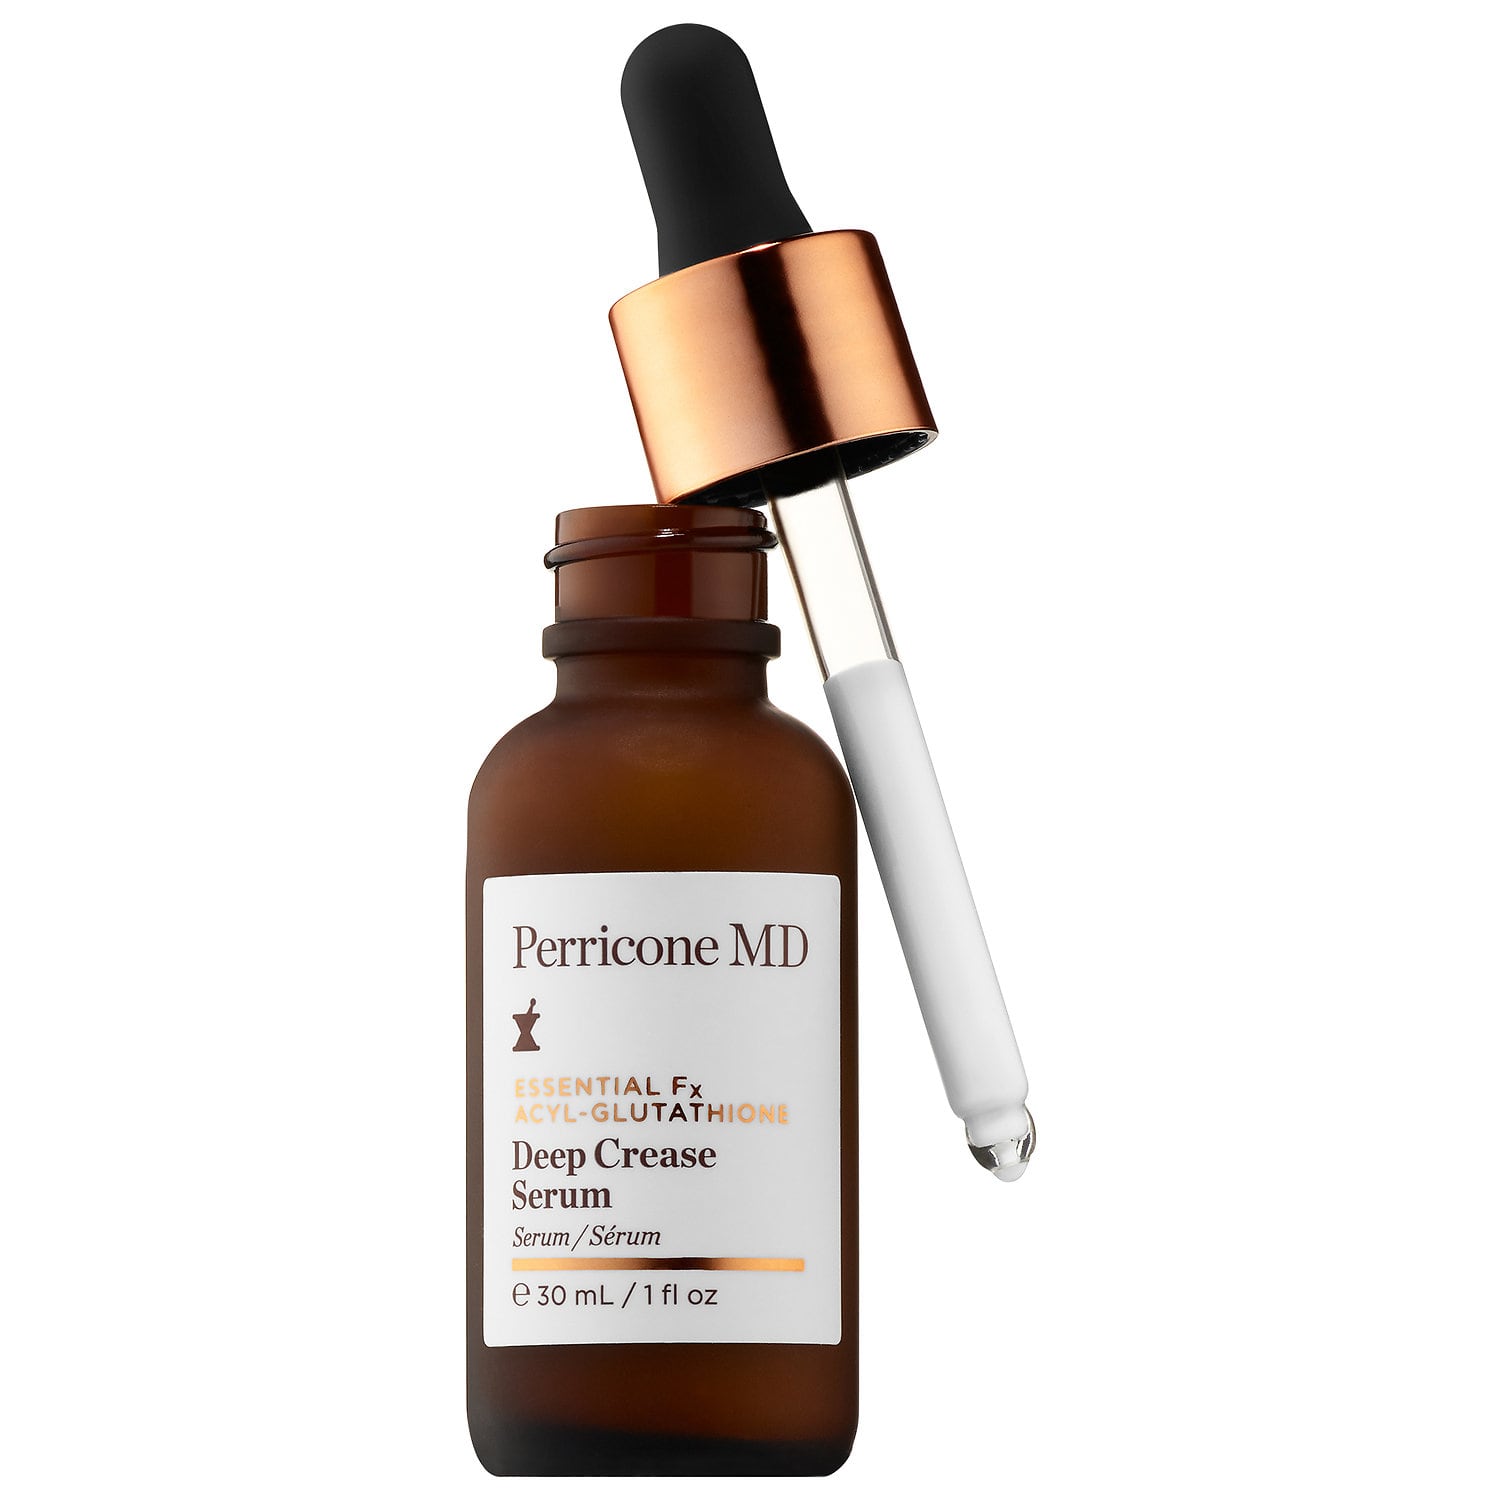 Сыворотка против глубоких морщин. Perricone Deep Crease Serum. Perricone MD acyl-Glutathione. Perricone MD. Perricone MD logo.